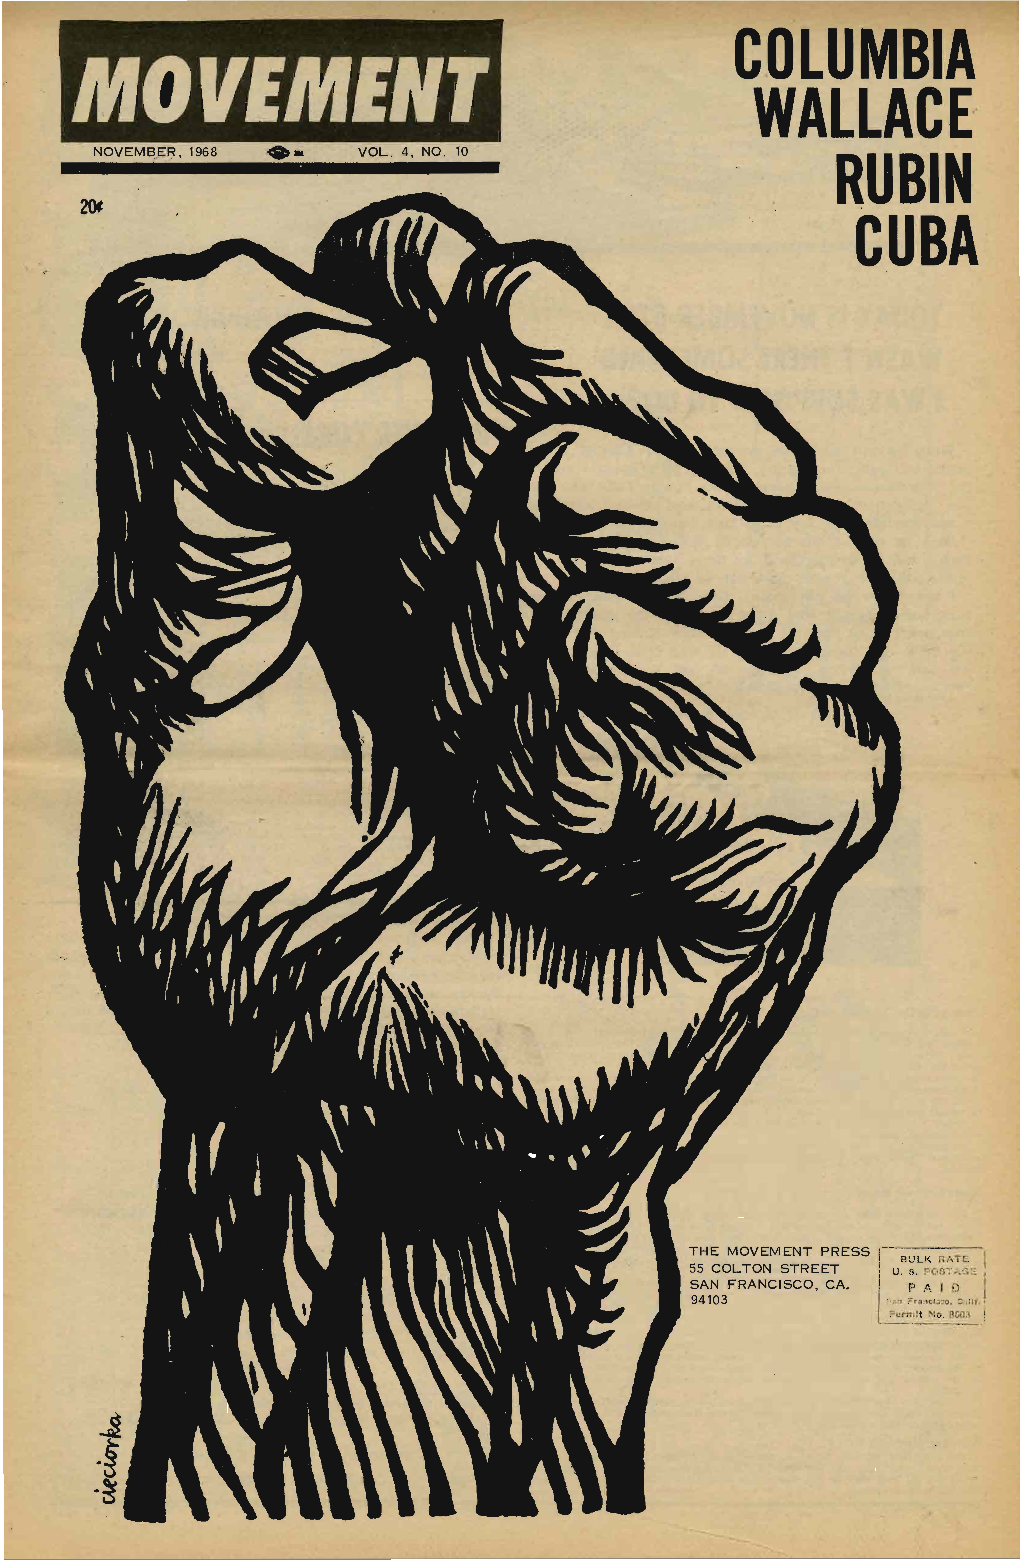 The Movement, November 1968. Vol. 4 No. 11